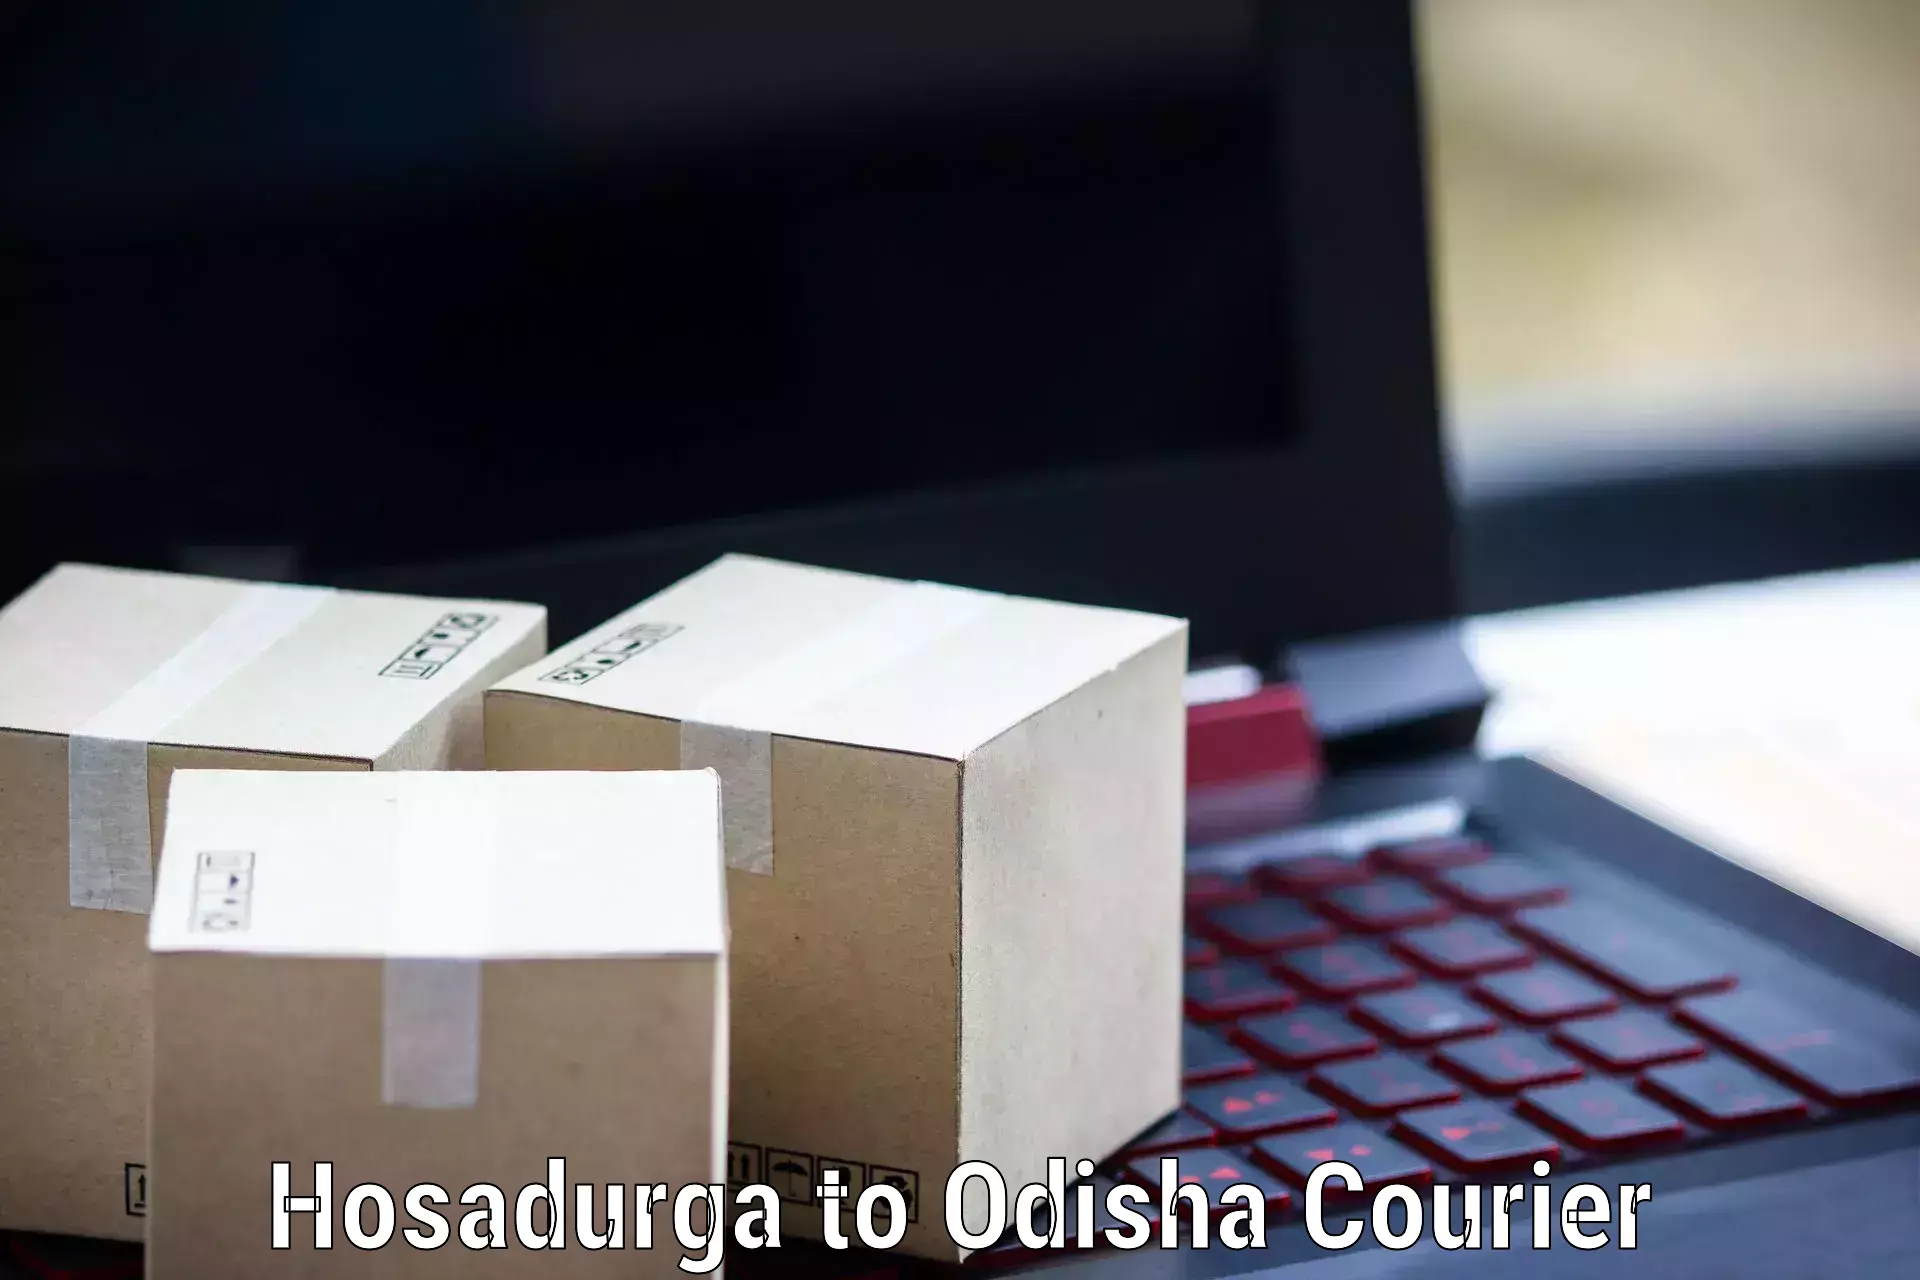 Logistics service provider Hosadurga to Kupari